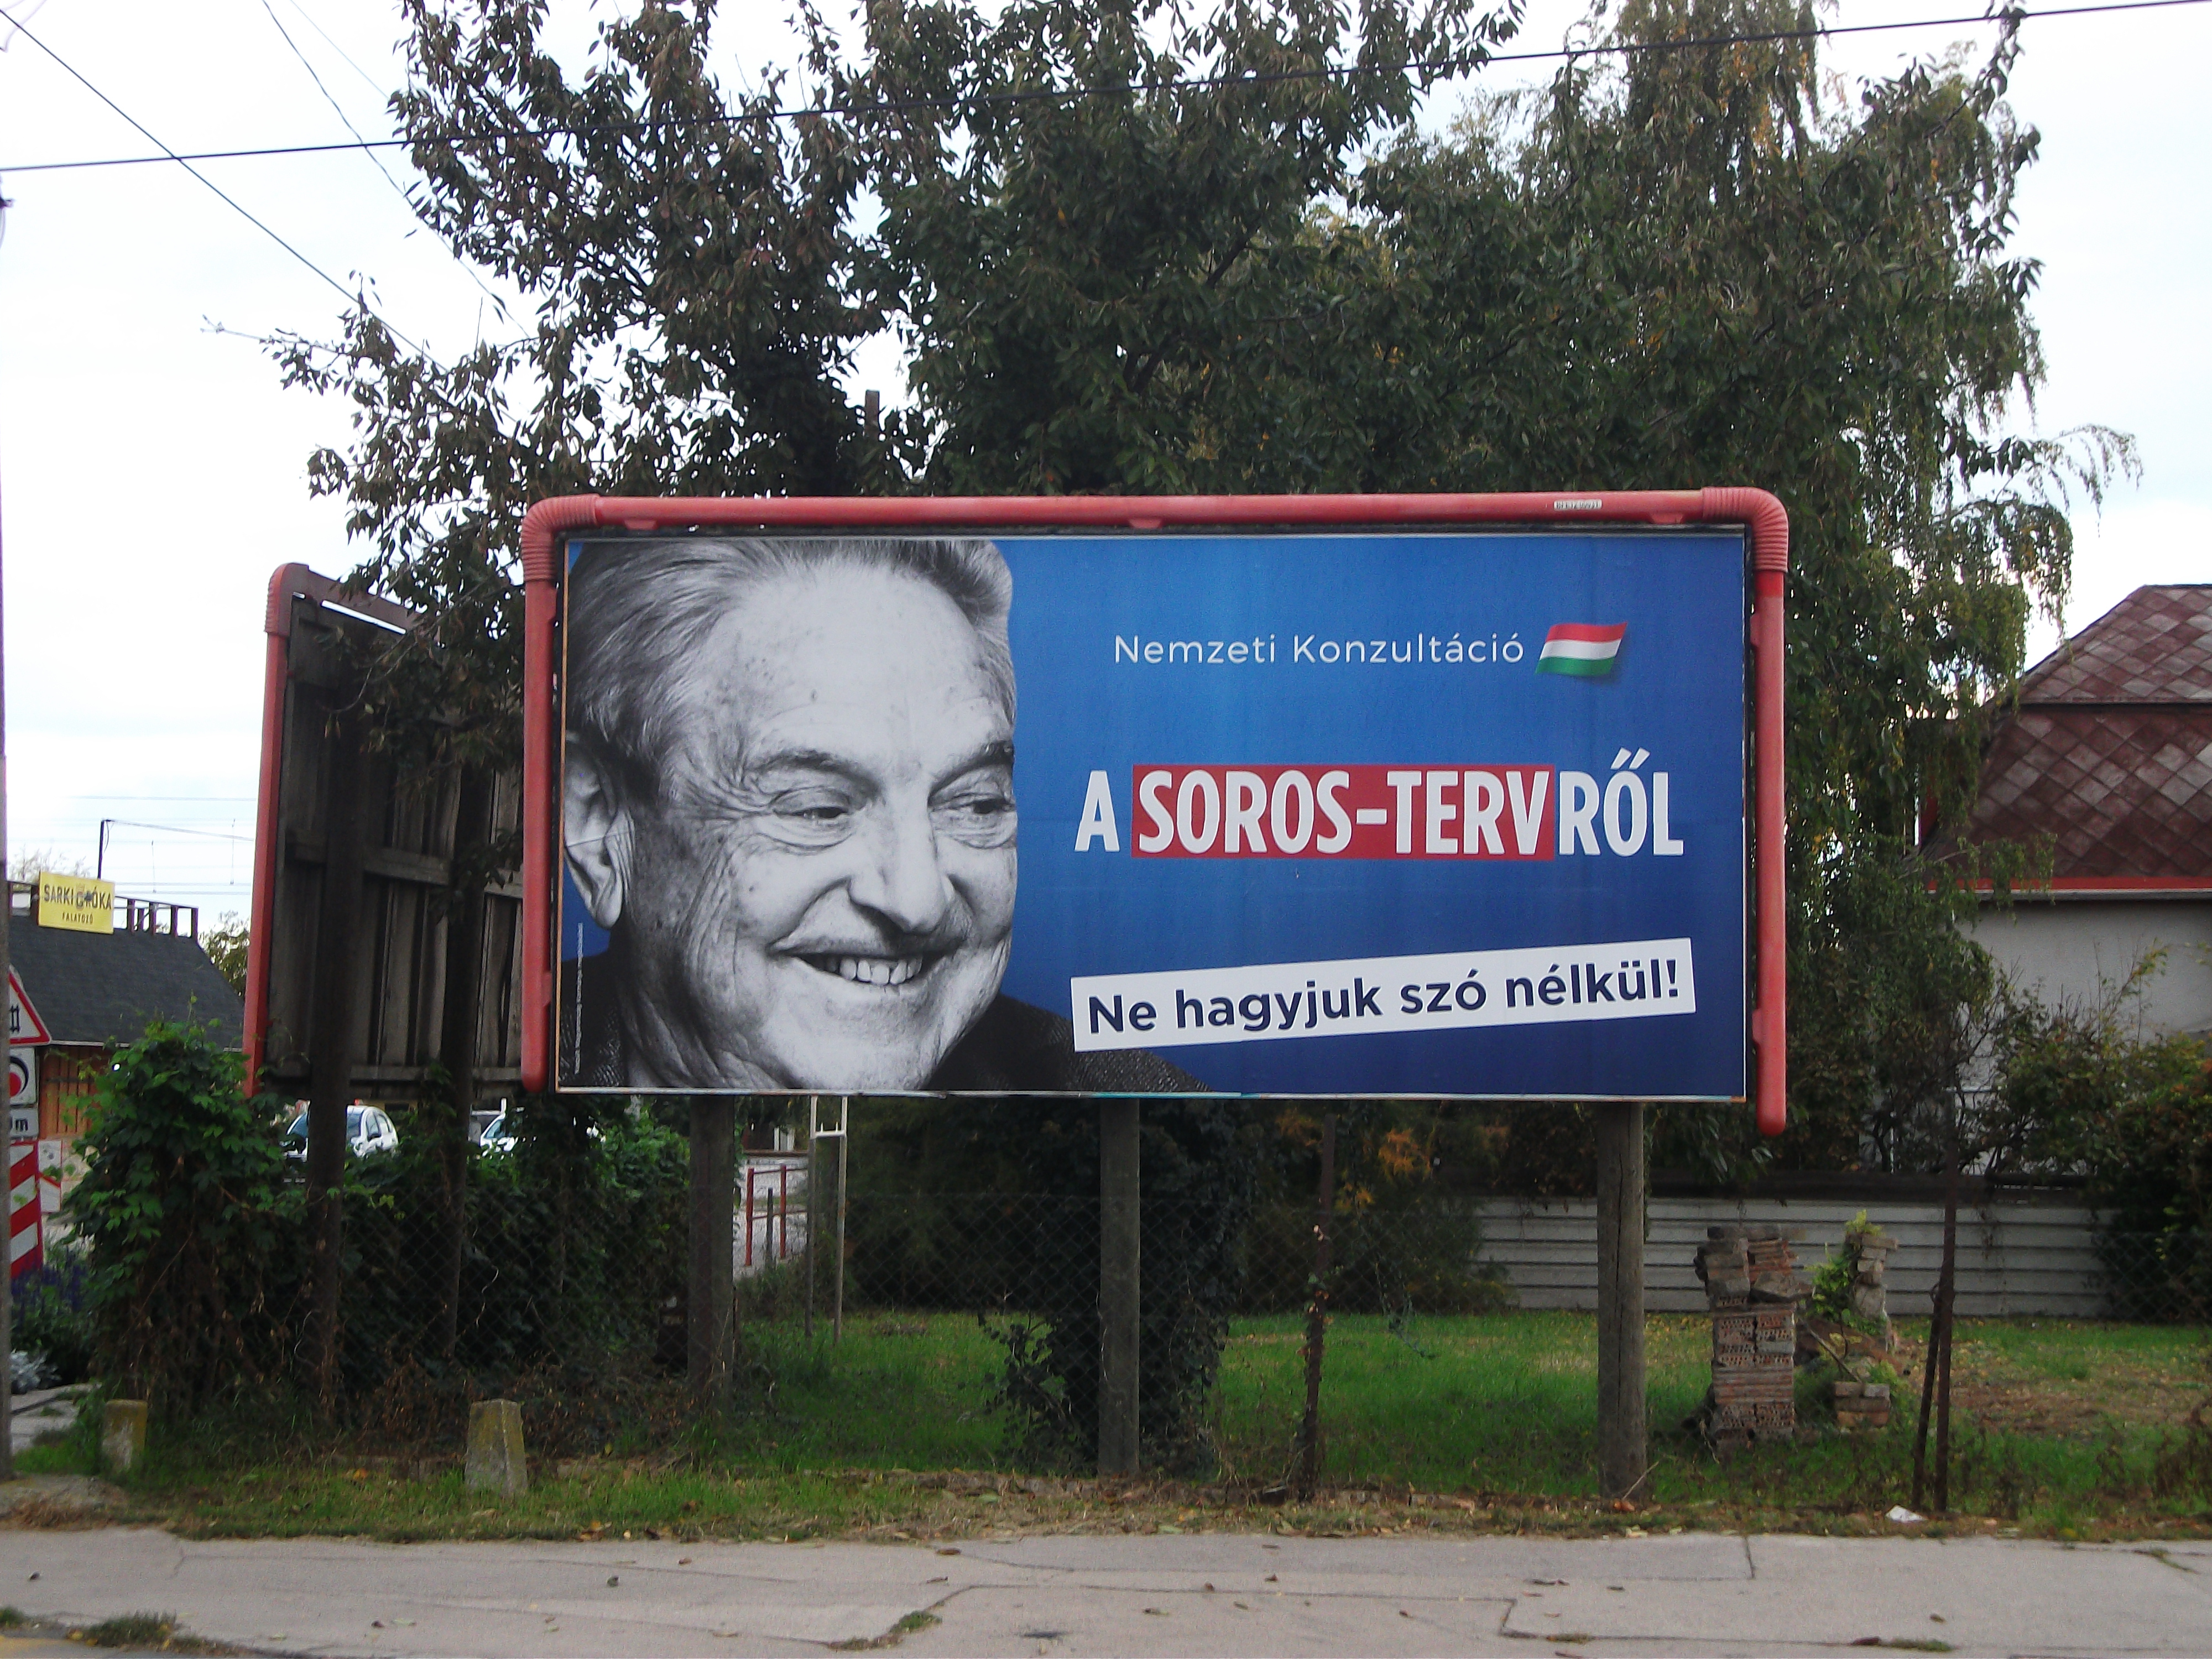 Local Opinion: The End Of Anti-Soros Propaganda In Hungary?